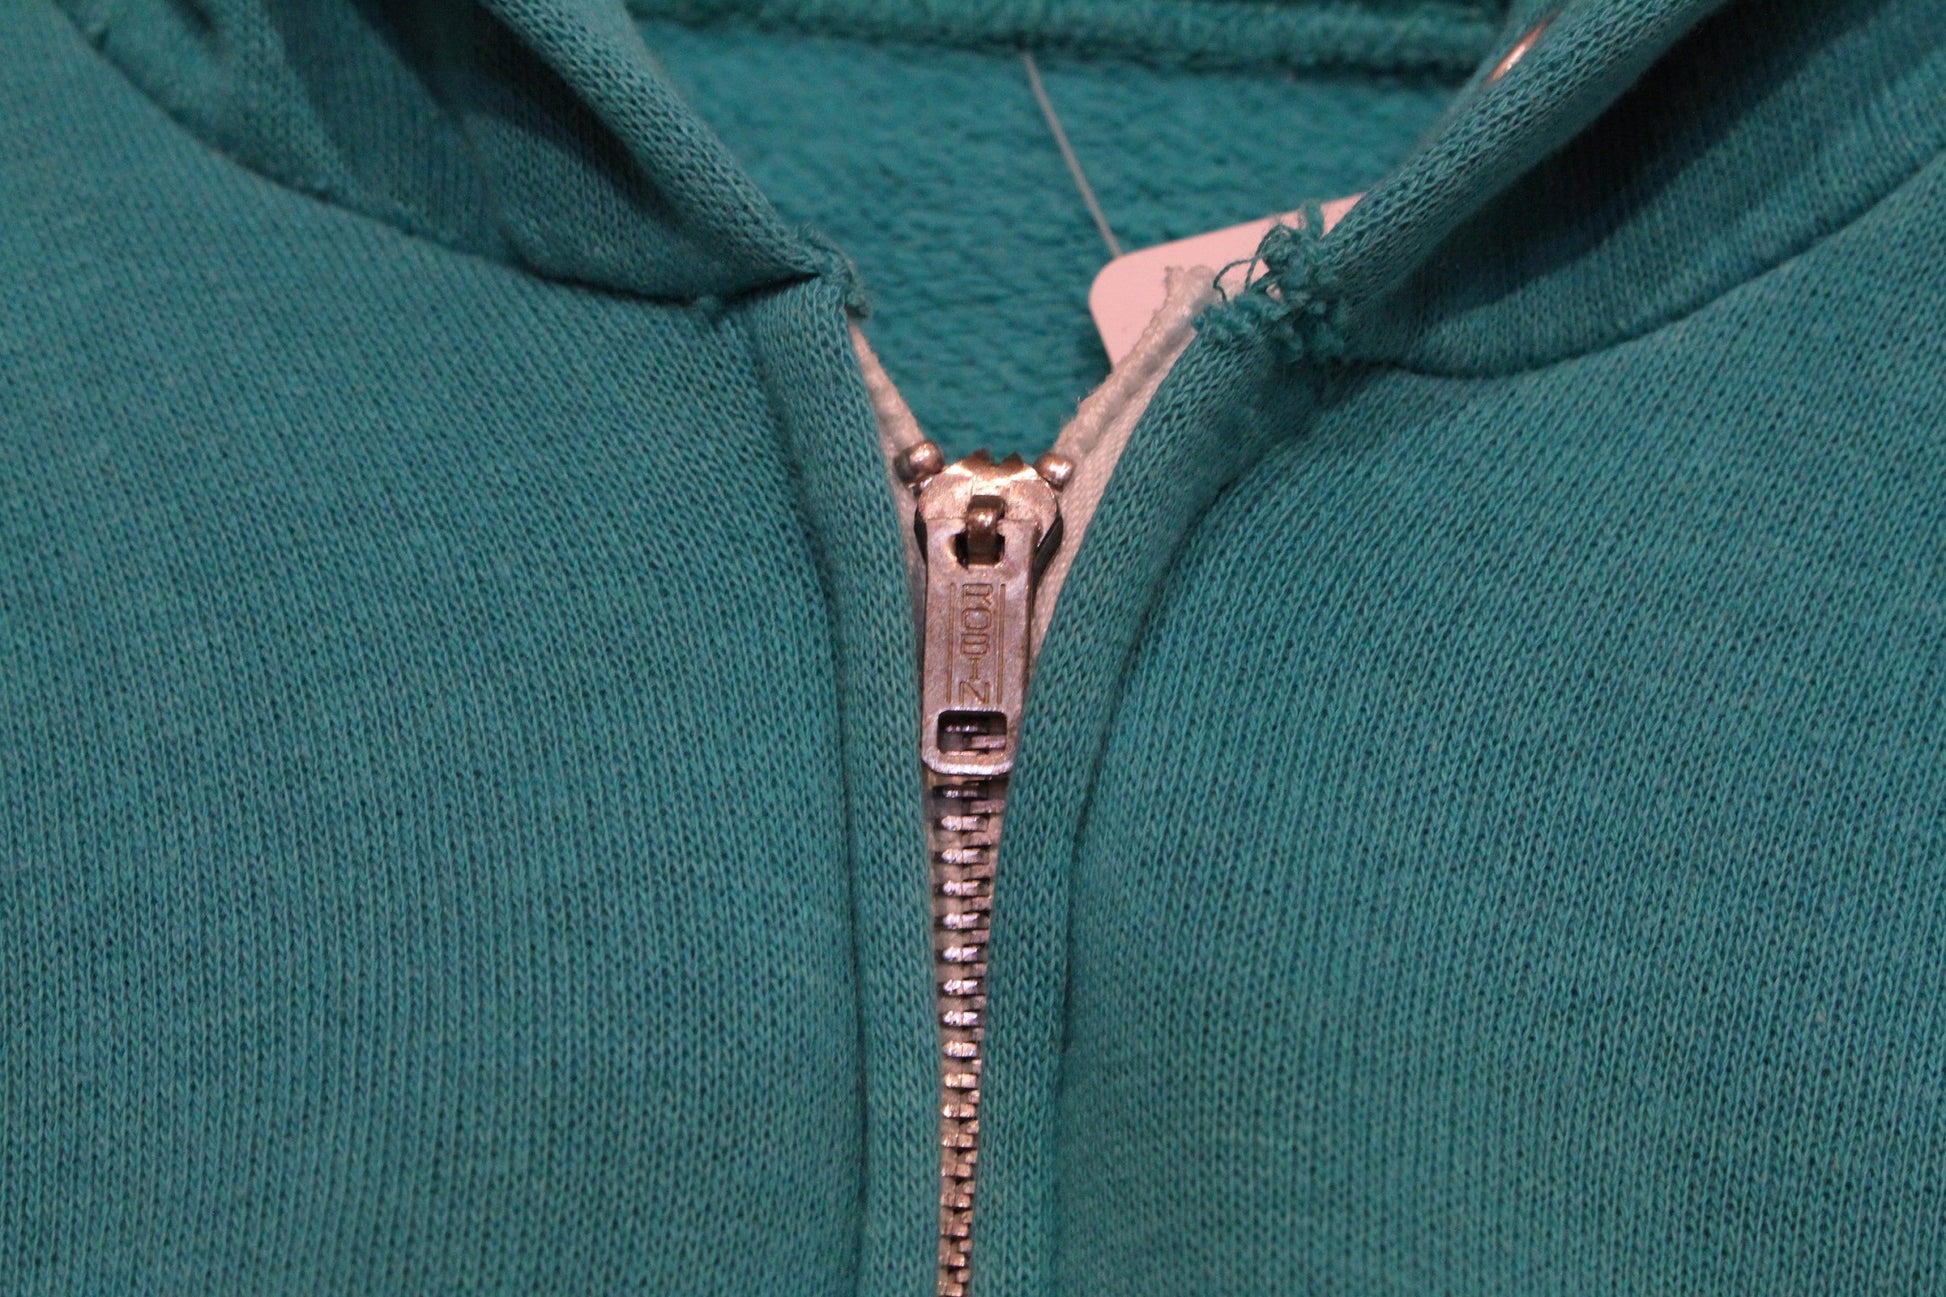 1970s/1980s Teal Zip-Up Hoodie Sweatshirt Women's Size S/M